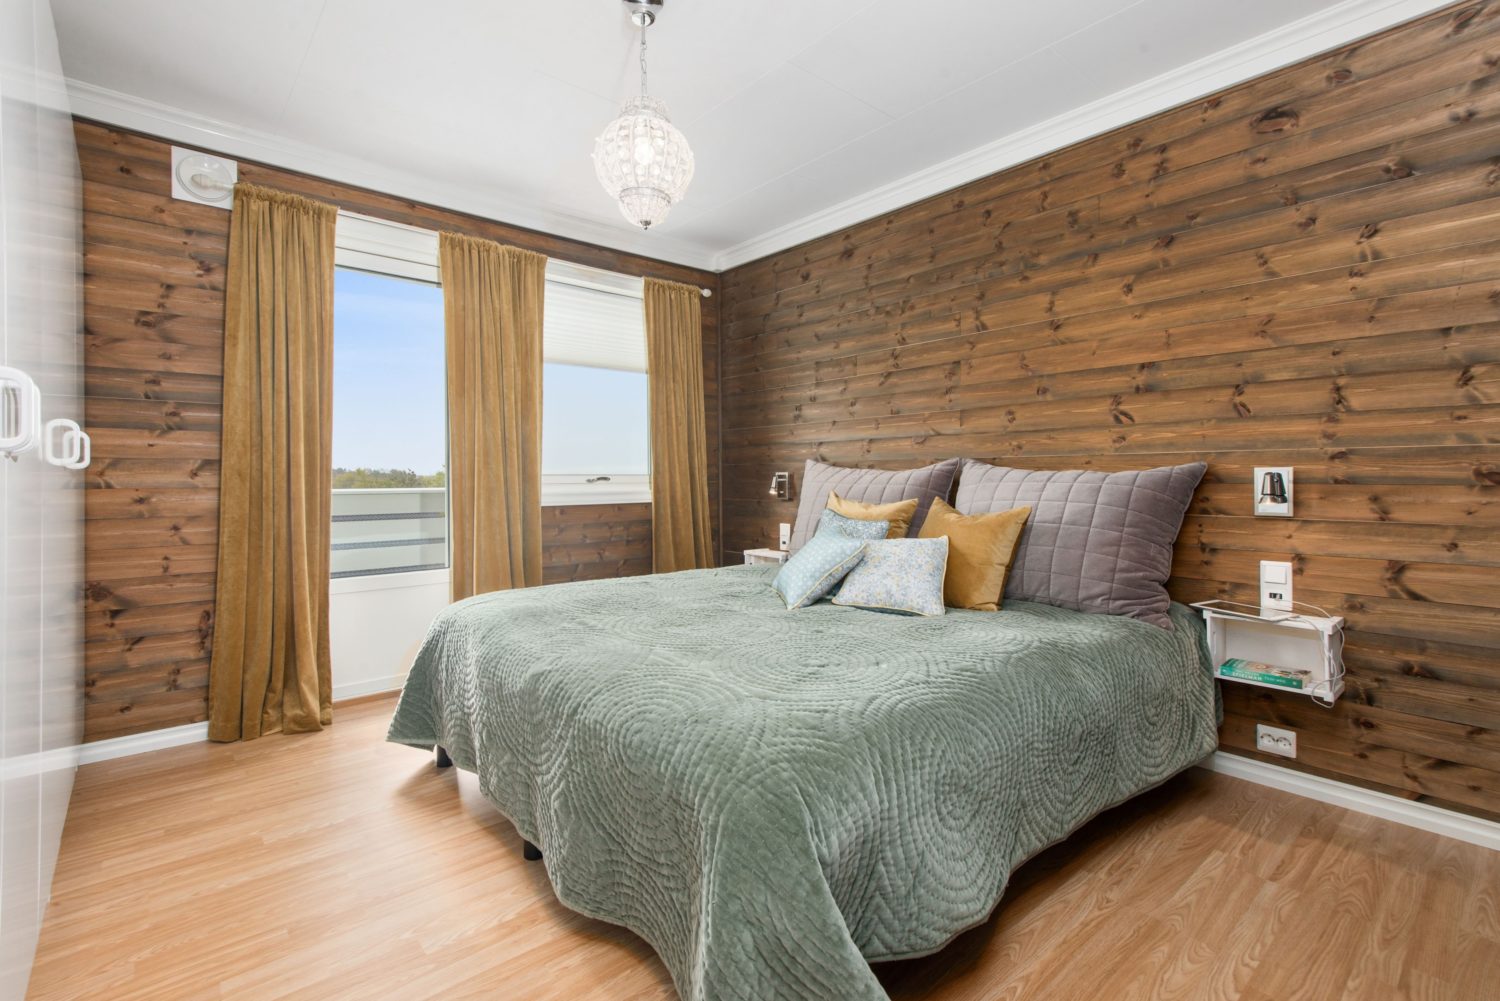 minimalist rustic bedroom